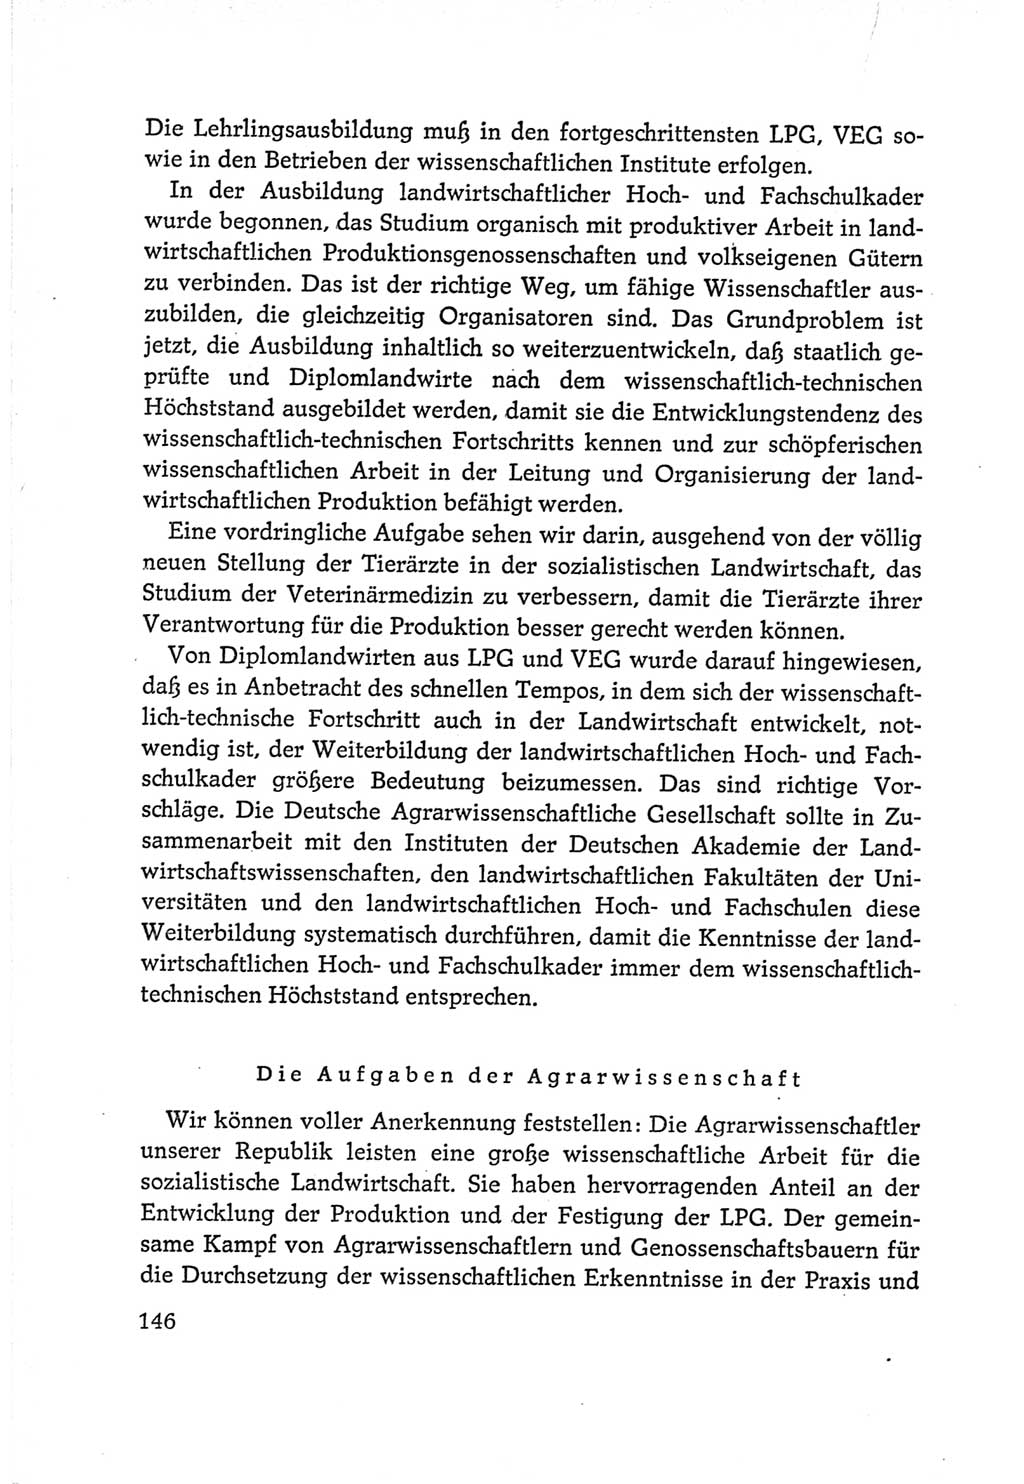 Protokoll der Verhandlungen des Ⅵ. Parteitages der Sozialistischen Einheitspartei Deutschlands (SED) [Deutsche Demokratische Republik (DDR)] 1963, Band Ⅰ, Seite 146 (Prot. Verh. Ⅵ. PT SED DDR 1963, Bd. Ⅰ, S. 146)